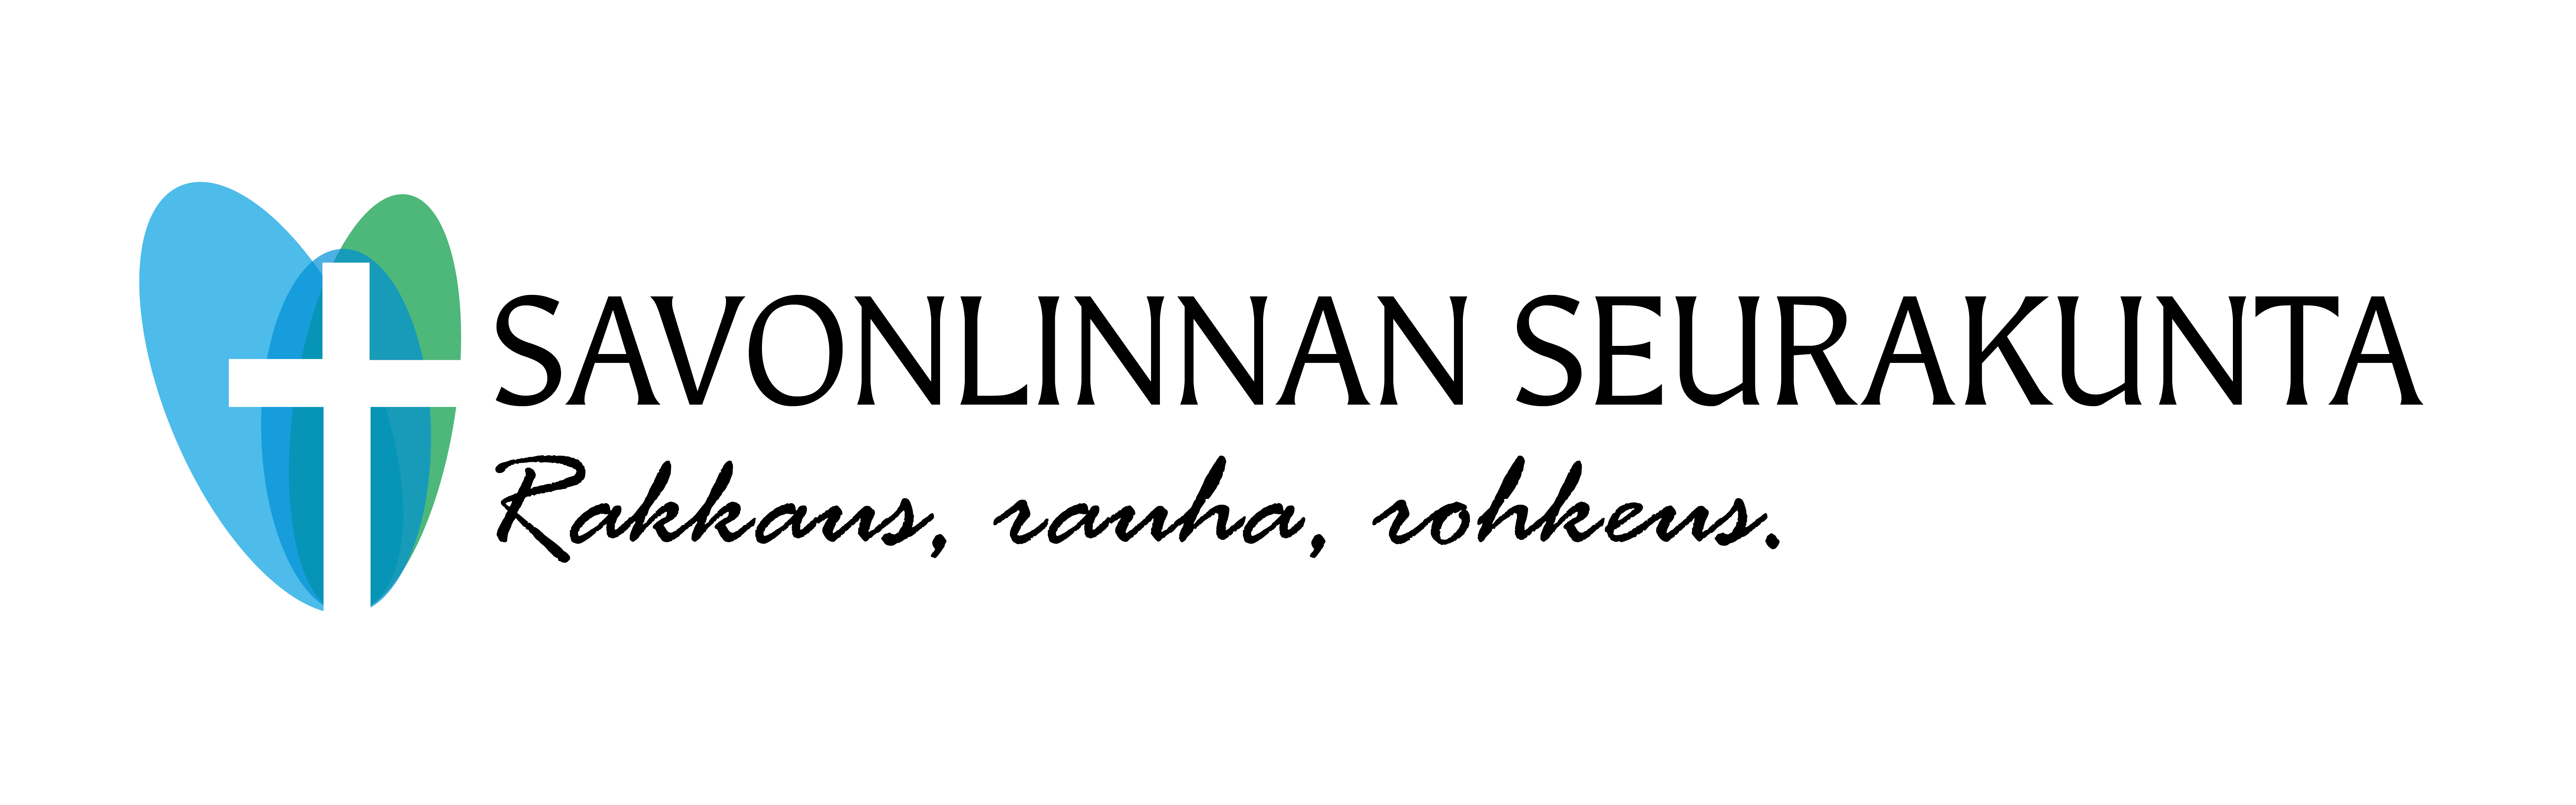 logo_lukkariin-1.jpg